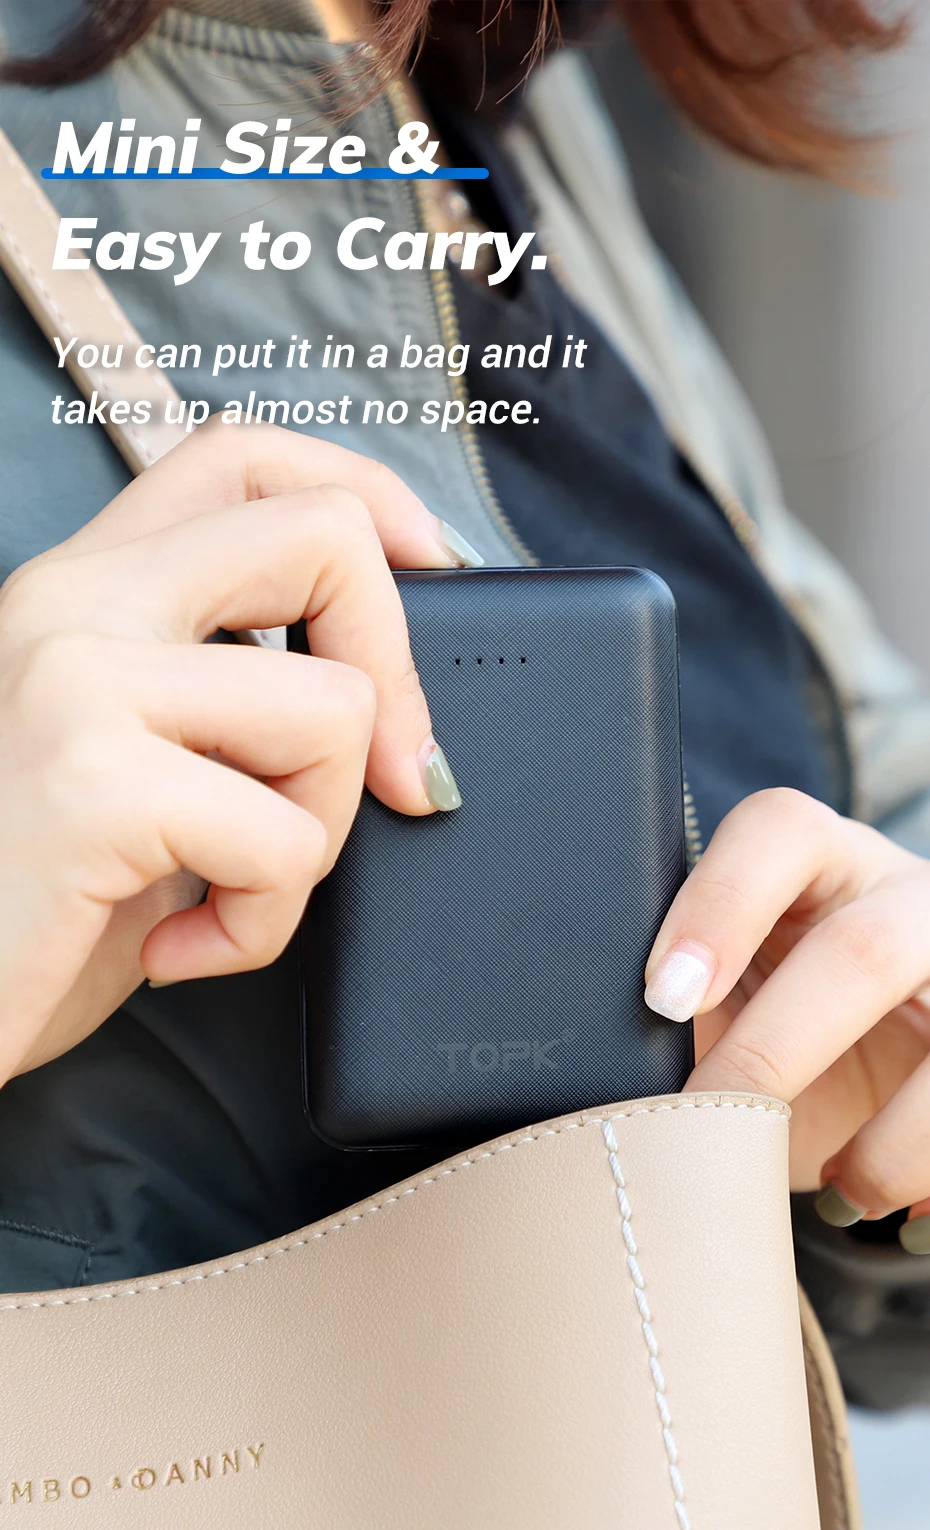 TOPK 10000 мАч Мини банк питания для iPhone Xiaomi huawei Dual USB портативный мобильный телефон внешний аккумулятор